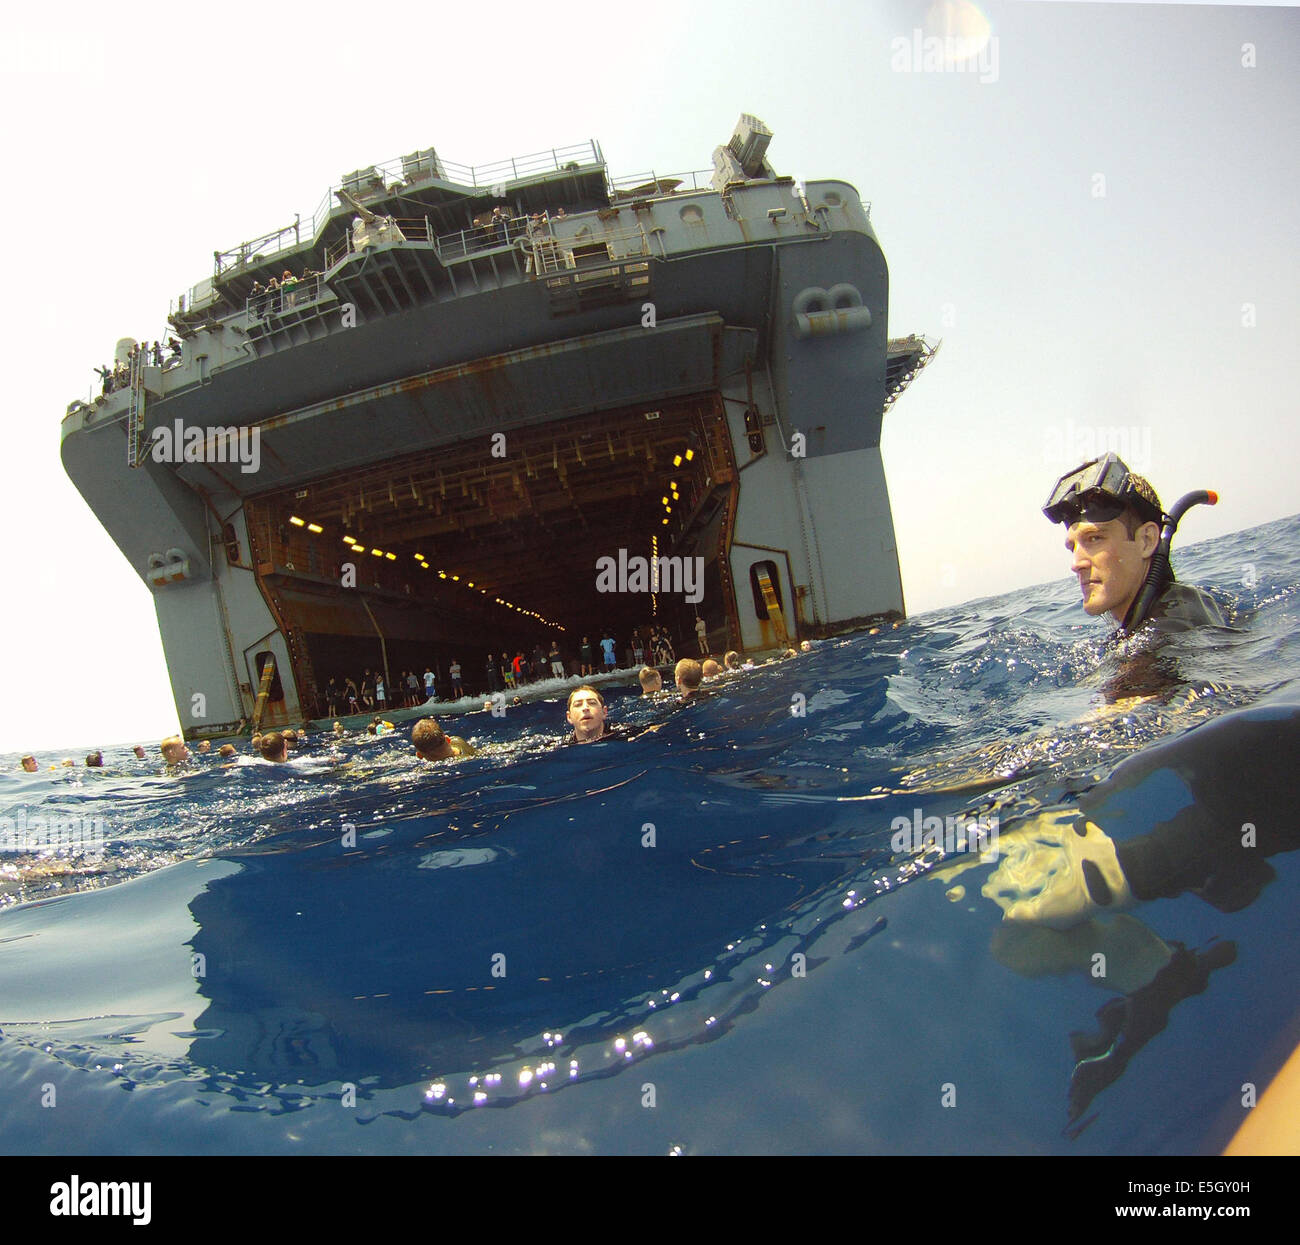 US-Matrosen und Marinesoldaten der amphibischen Angriff Schiff USS Bataan (LHD-5) zugeordnet zu beteiligen, in einem Bad-Aufruf in der Mediterra Stockfoto